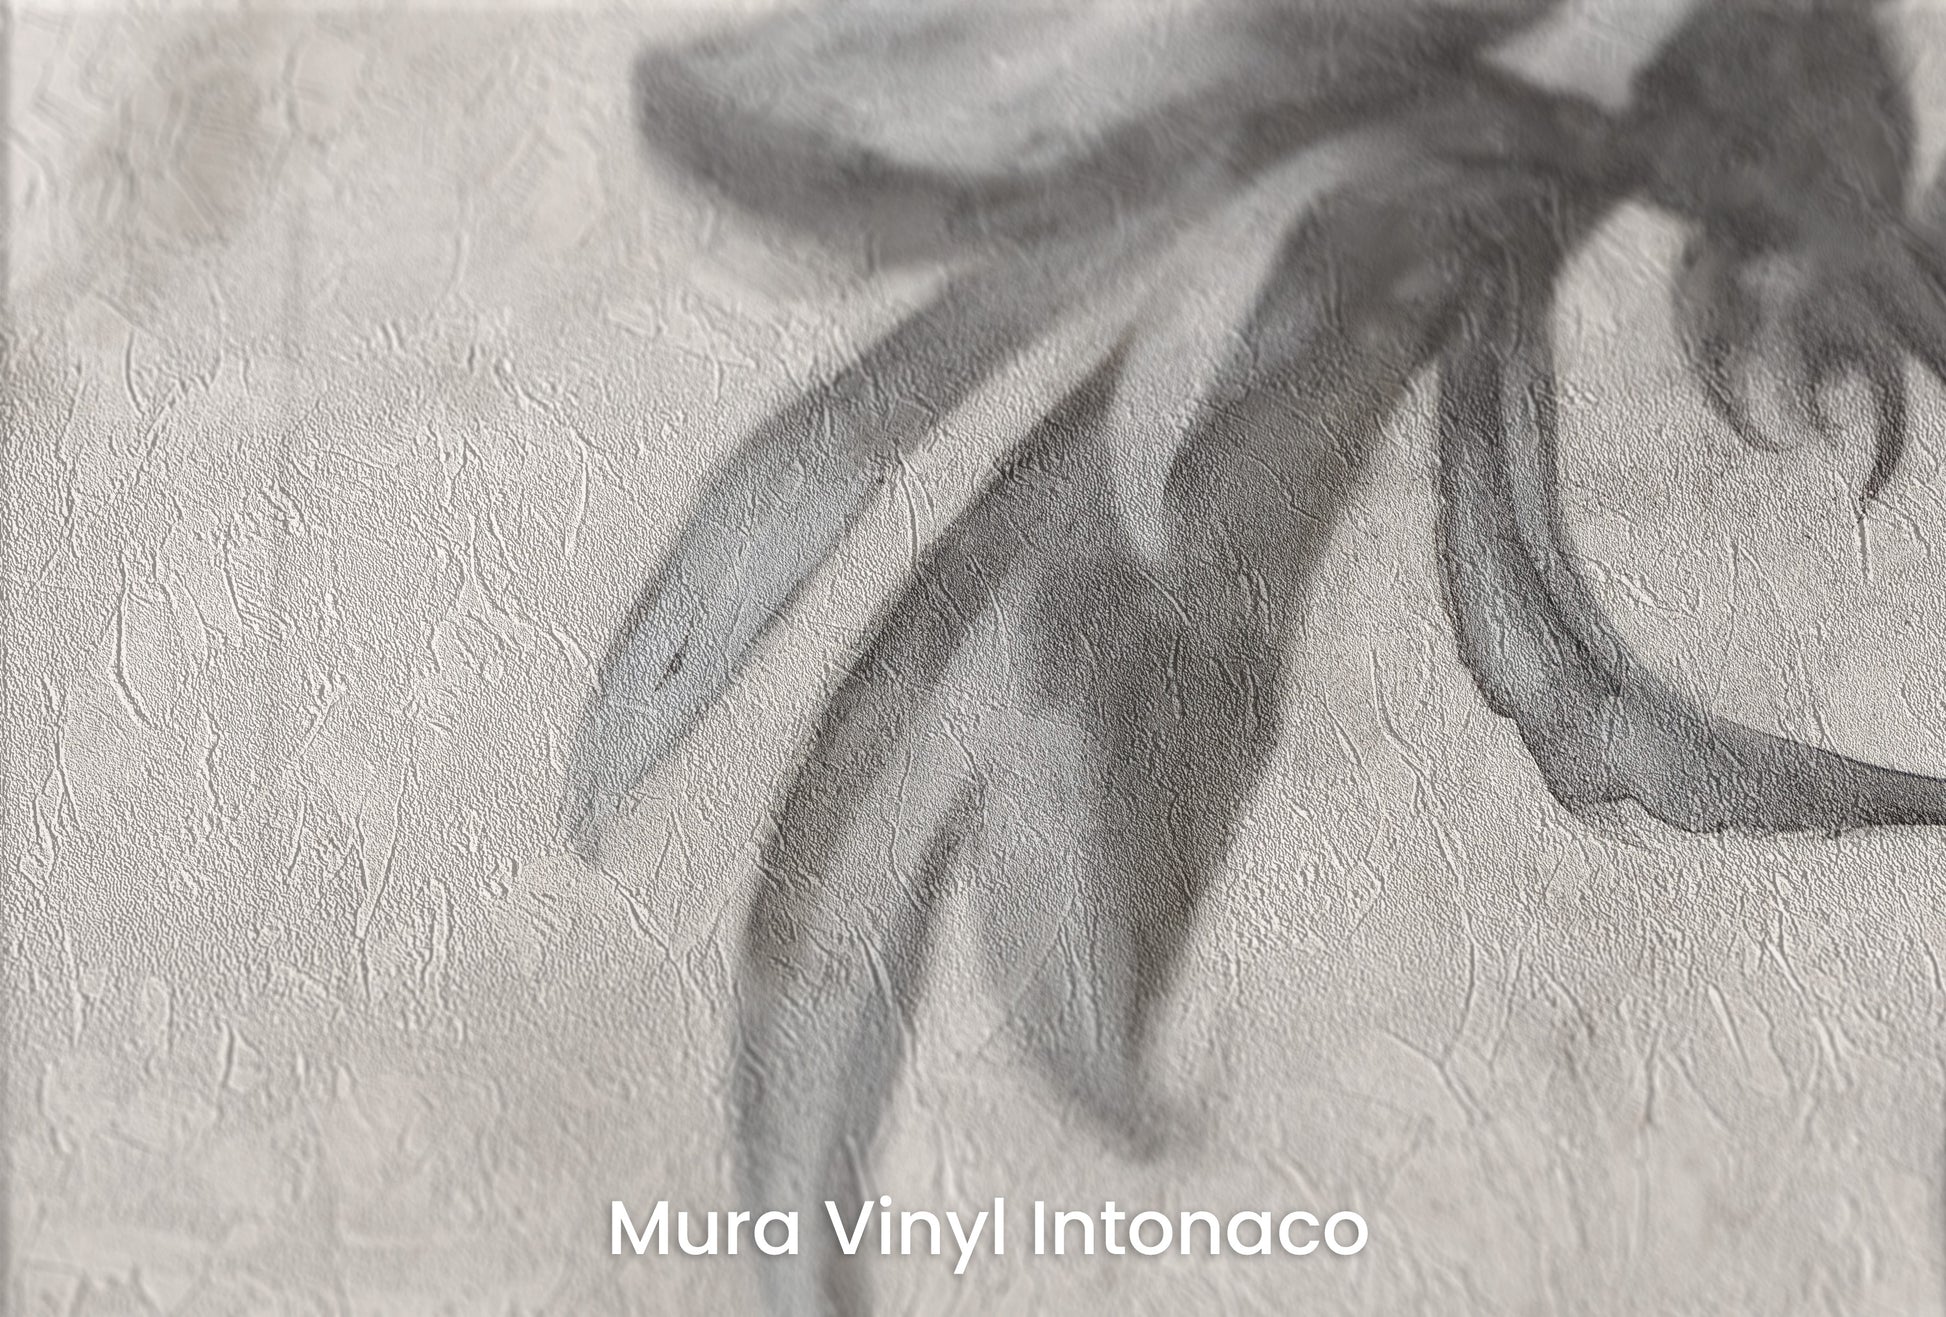 Zbliżenie na artystyczną fototapetę o nazwie MONOCHROME BLOOM INK SKETCH na podłożu Mura Vinyl Intonaco - struktura tartego tynku.